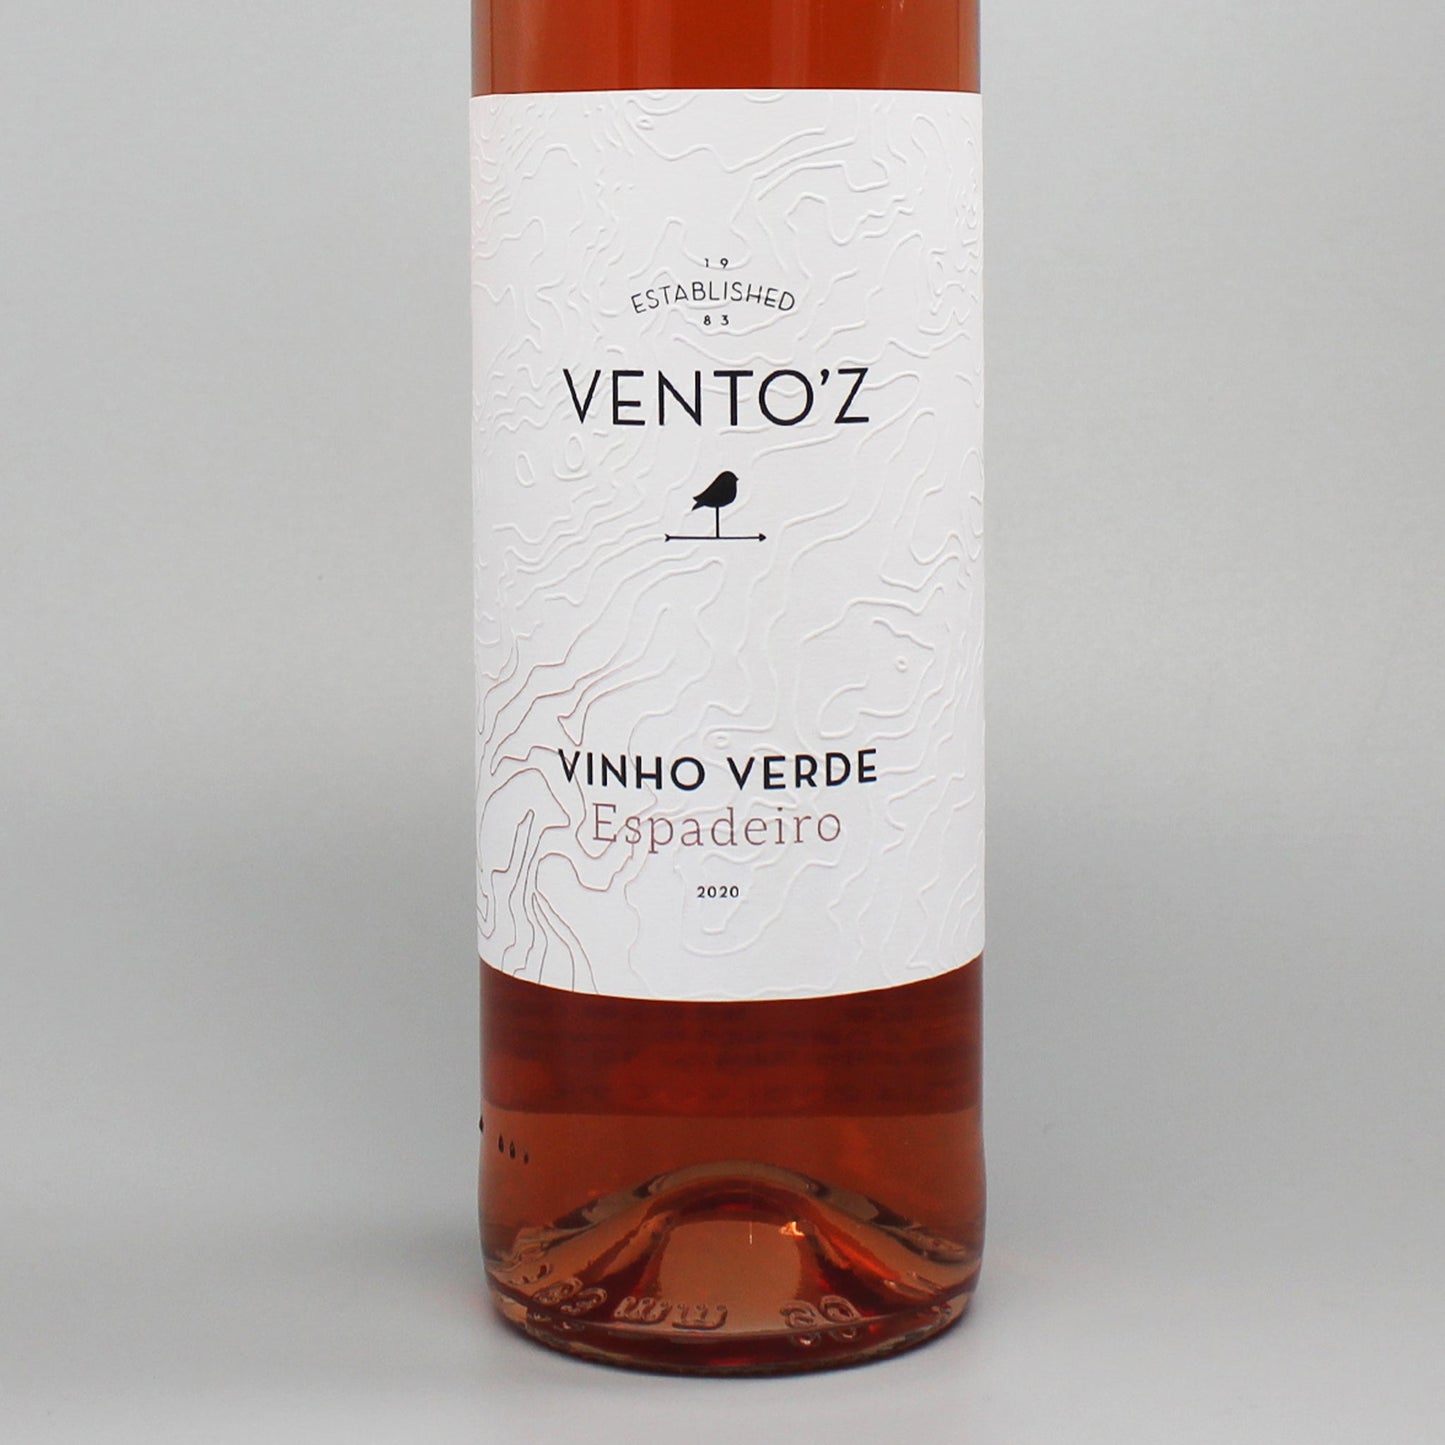 ［ポルトガルワイン］カサール･デ･ヴェントゼーラ ヴェントズ エスパデイロ 2020 ロゼ 750ml